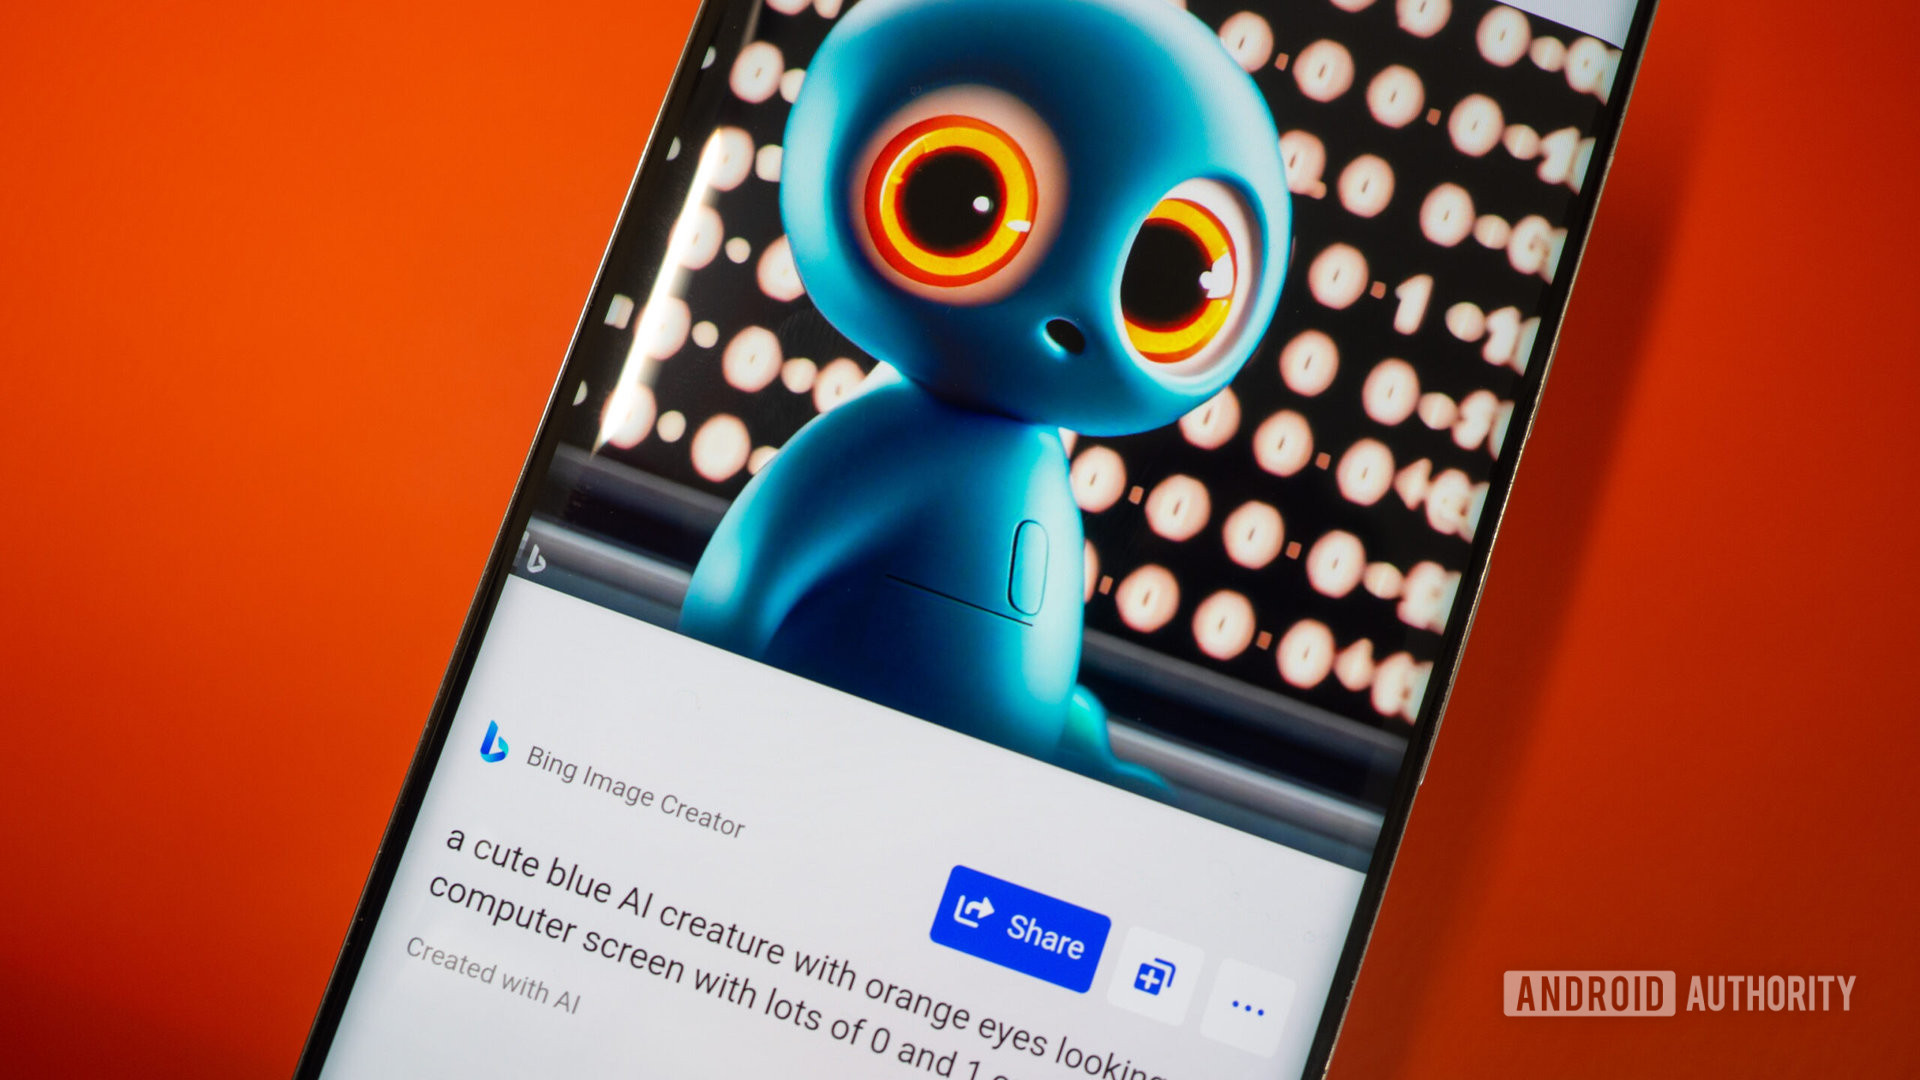 Bing Image Creator di ponsel menampilkan satu gambar makhluk AI biru dengan mata oranye di depan layar dengan angka nol dan satu